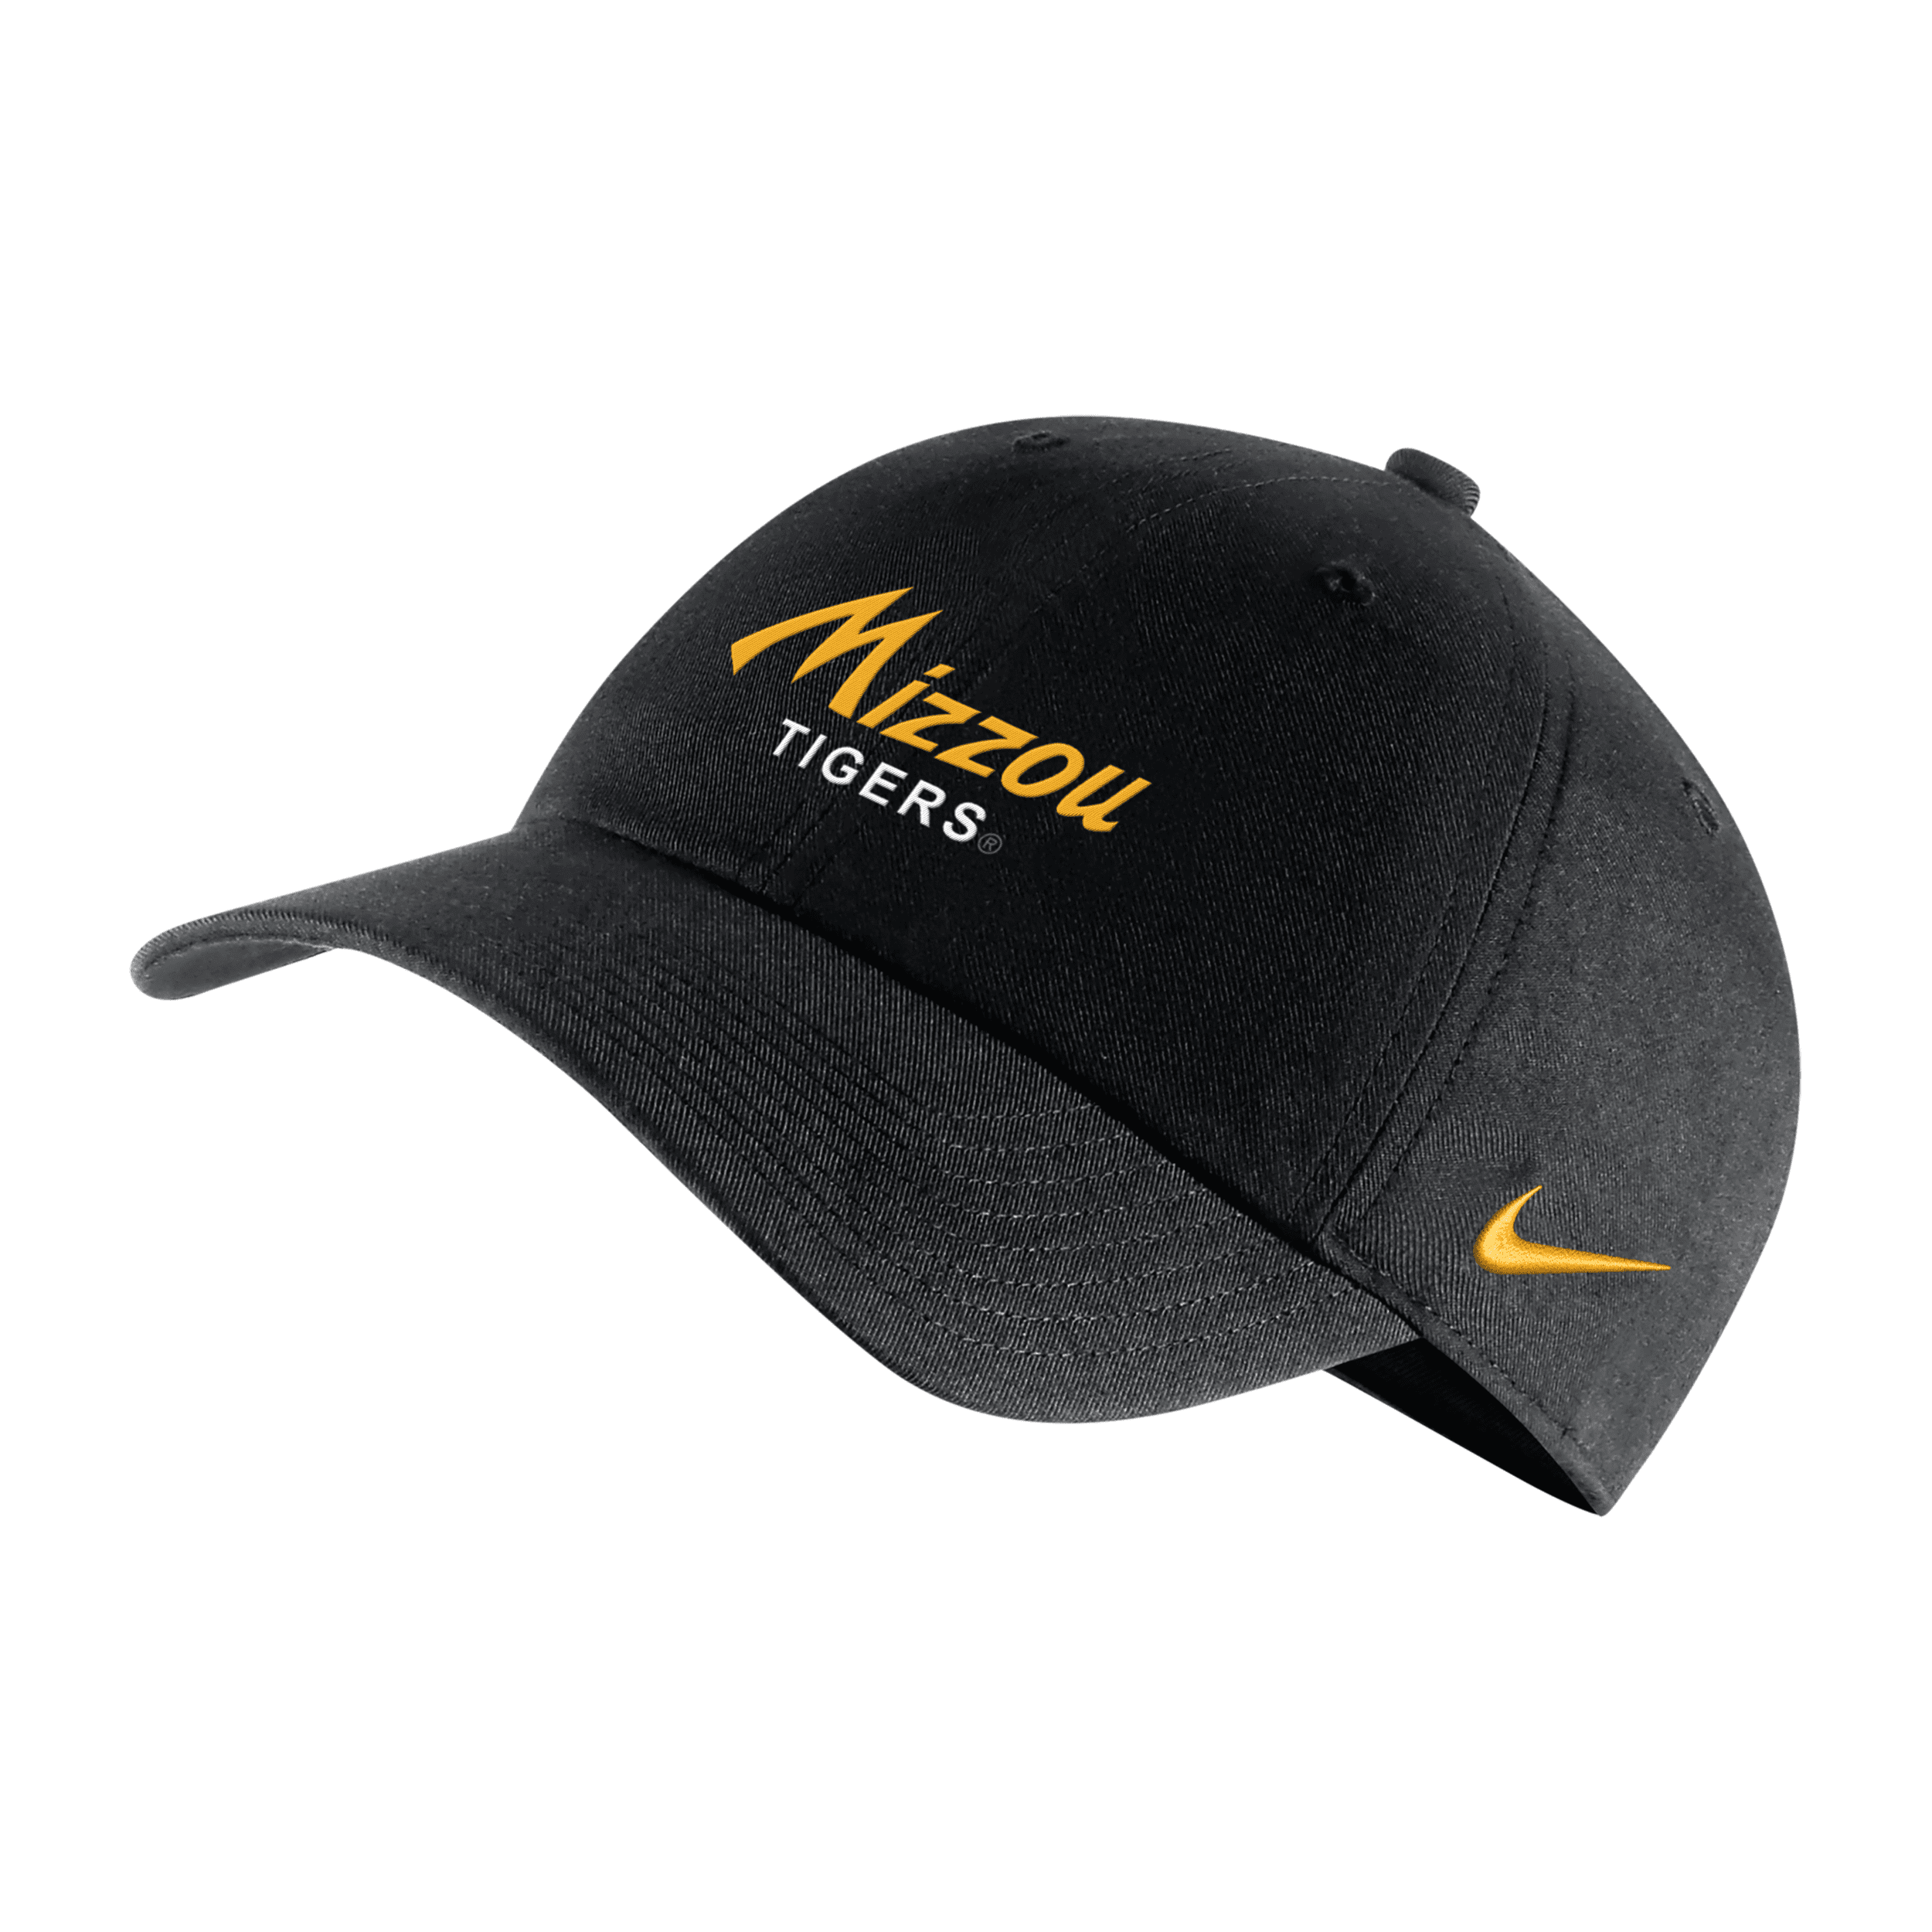 Nike Missouri Campus 365  Unisex College Adjustable Hat In Black